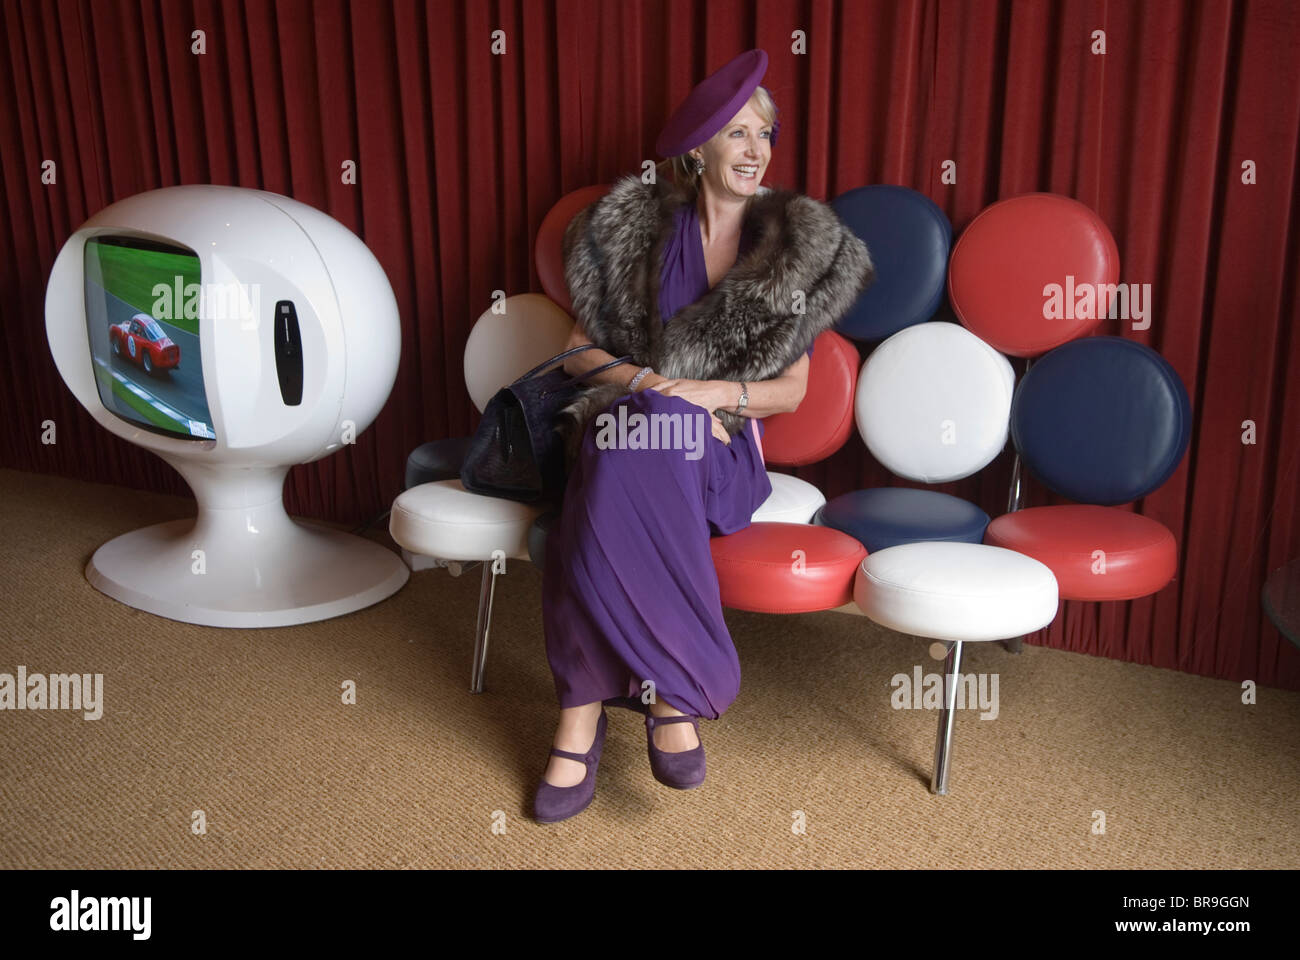 Femme rétro habillée dans le style à la mode des années 1950 1940 au Goodwood Festival of Speed. Goodwood Sussex Royaume-Uni. Salon VIP, chaise vintage et TV. HOMER SYKES des années 2010 2010 Banque D'Images